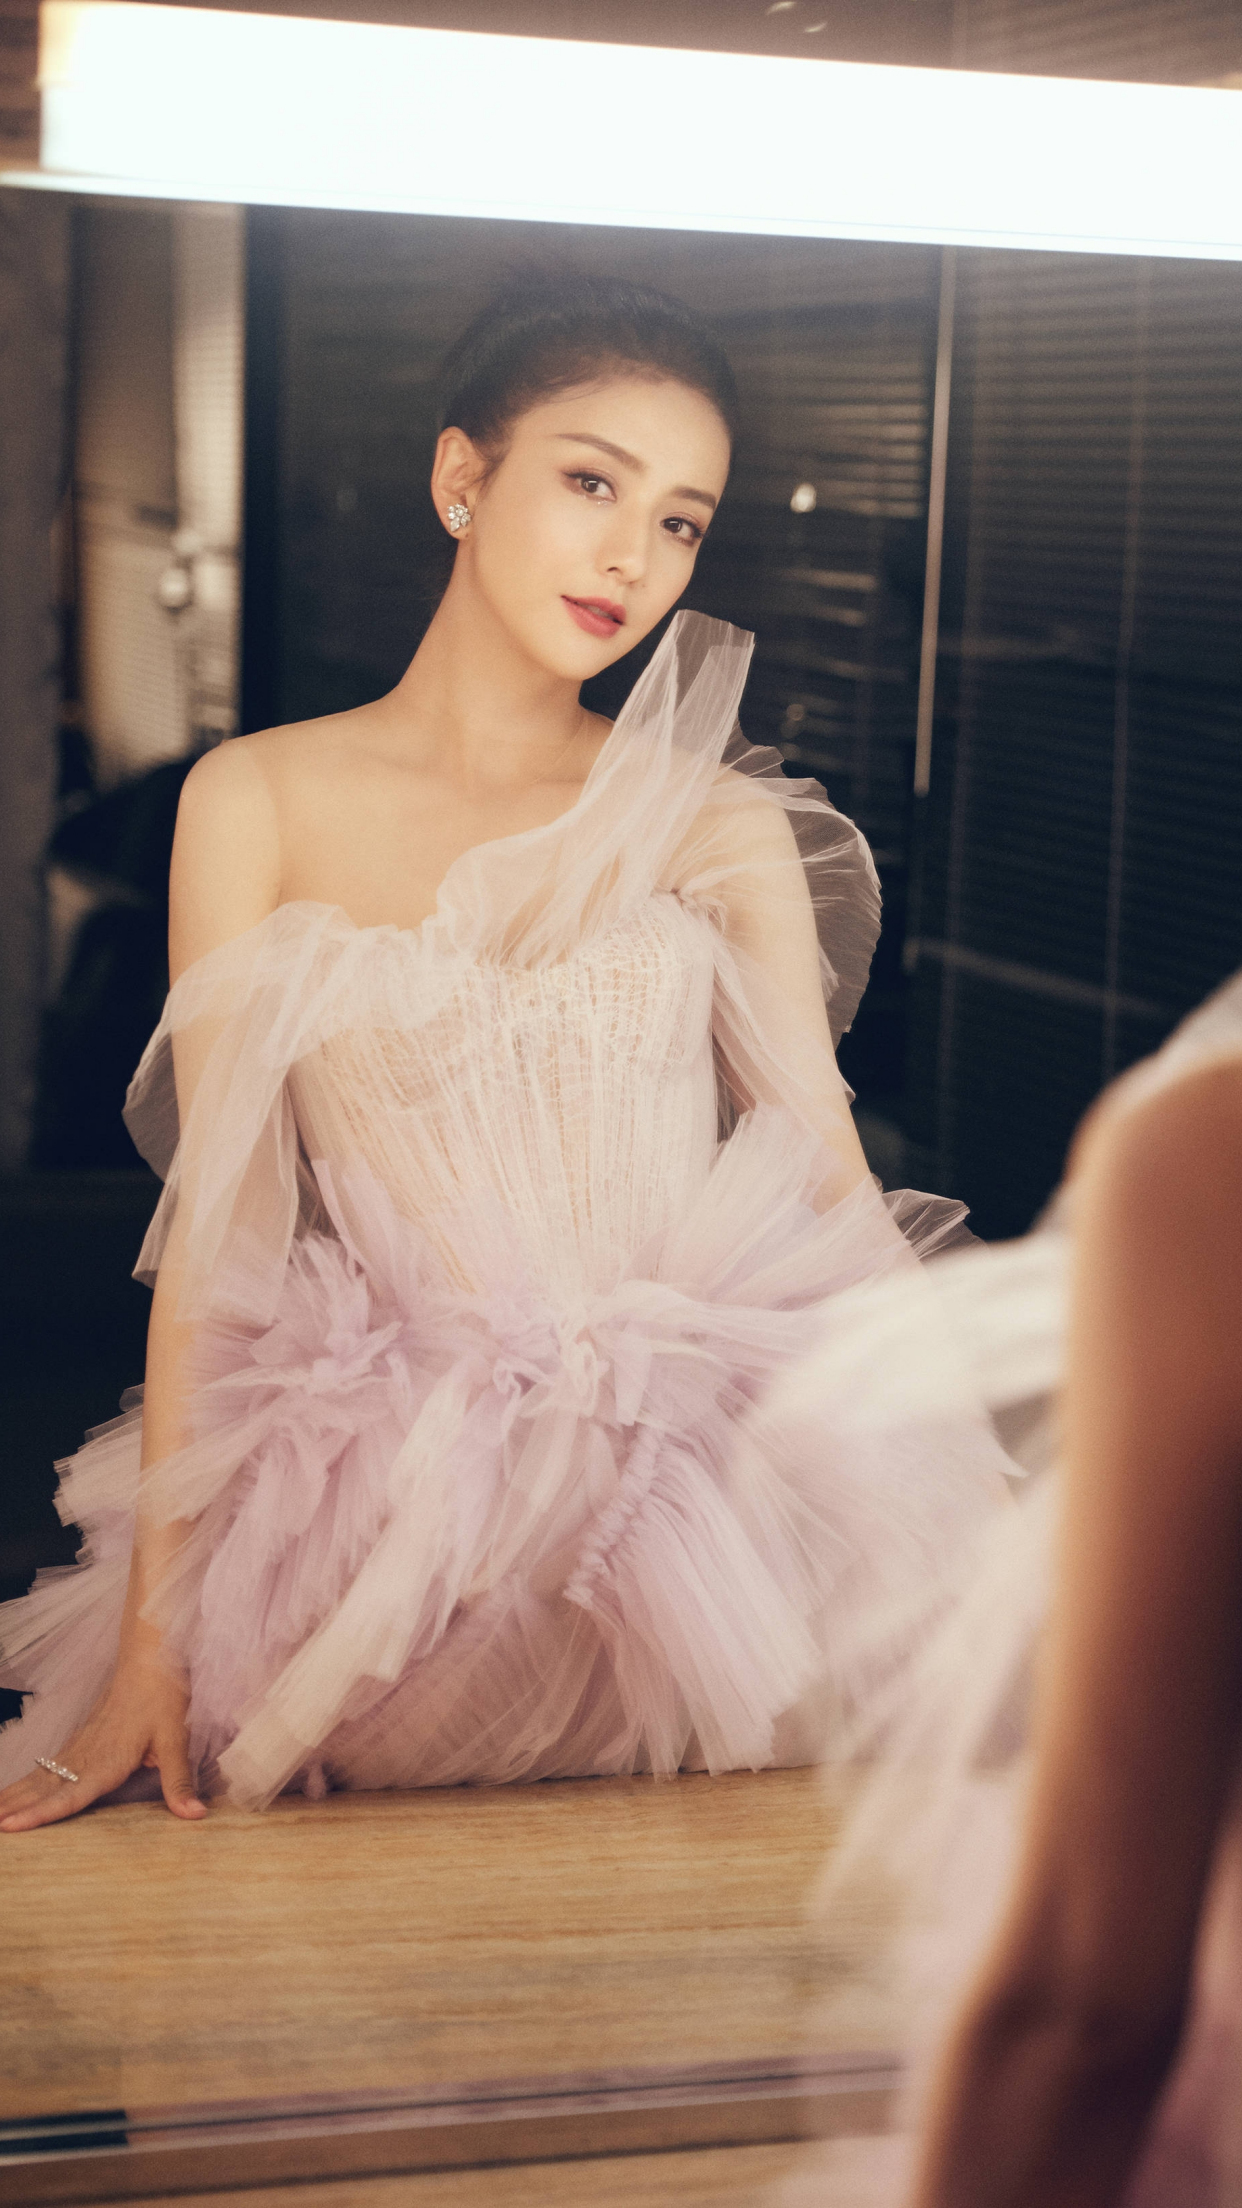 演员佟丽娅,纱裙造型又美又仙,来看你喜欢哪套造型吧